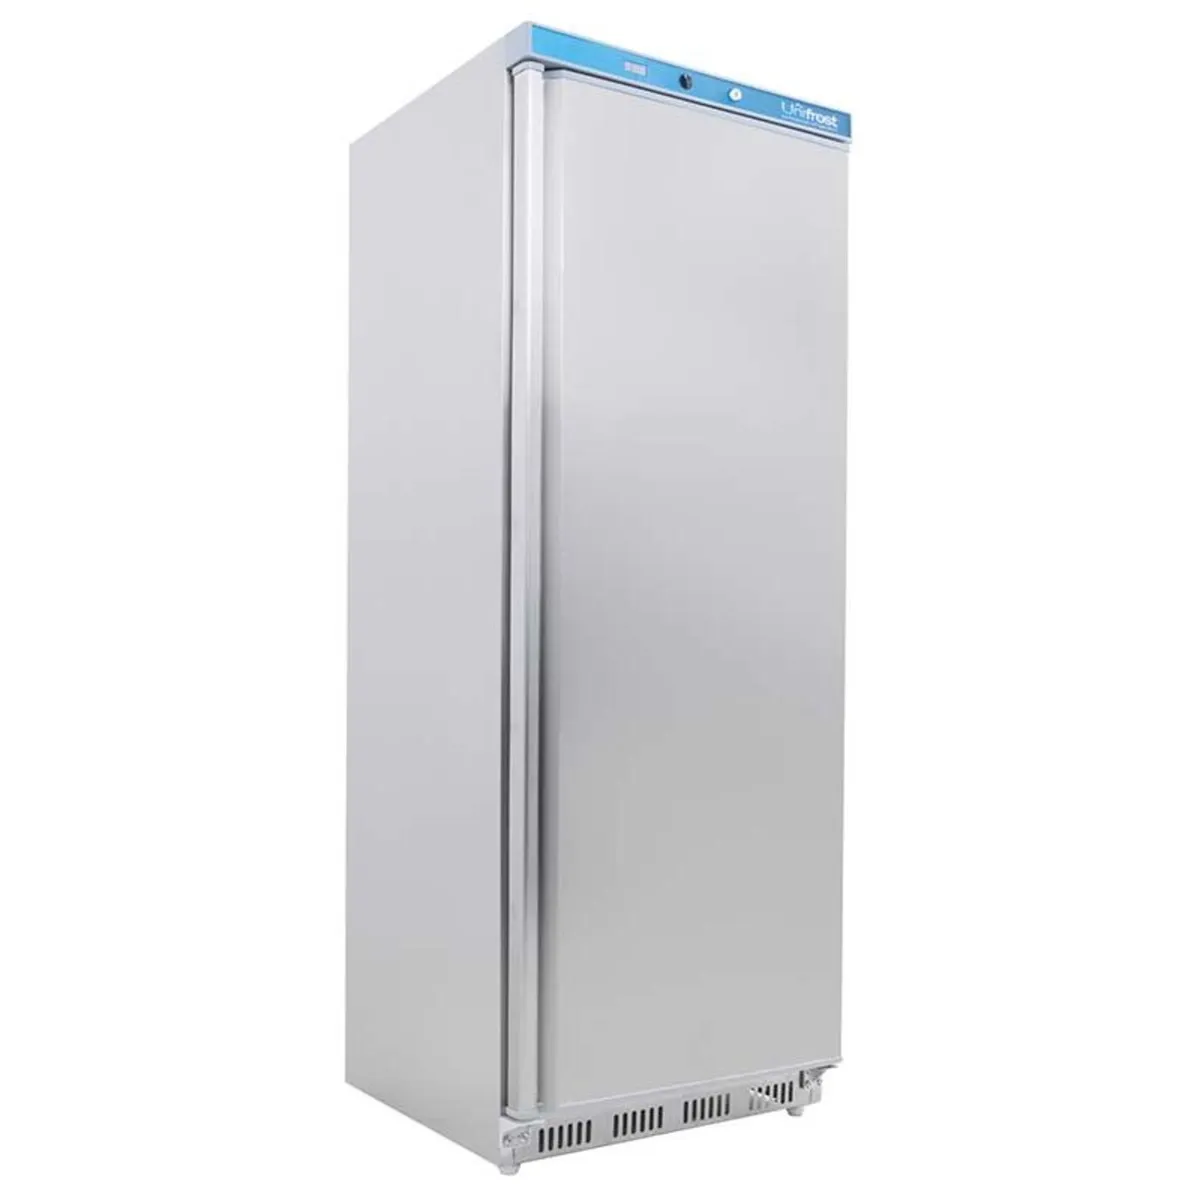 Single Door Upright Freezer